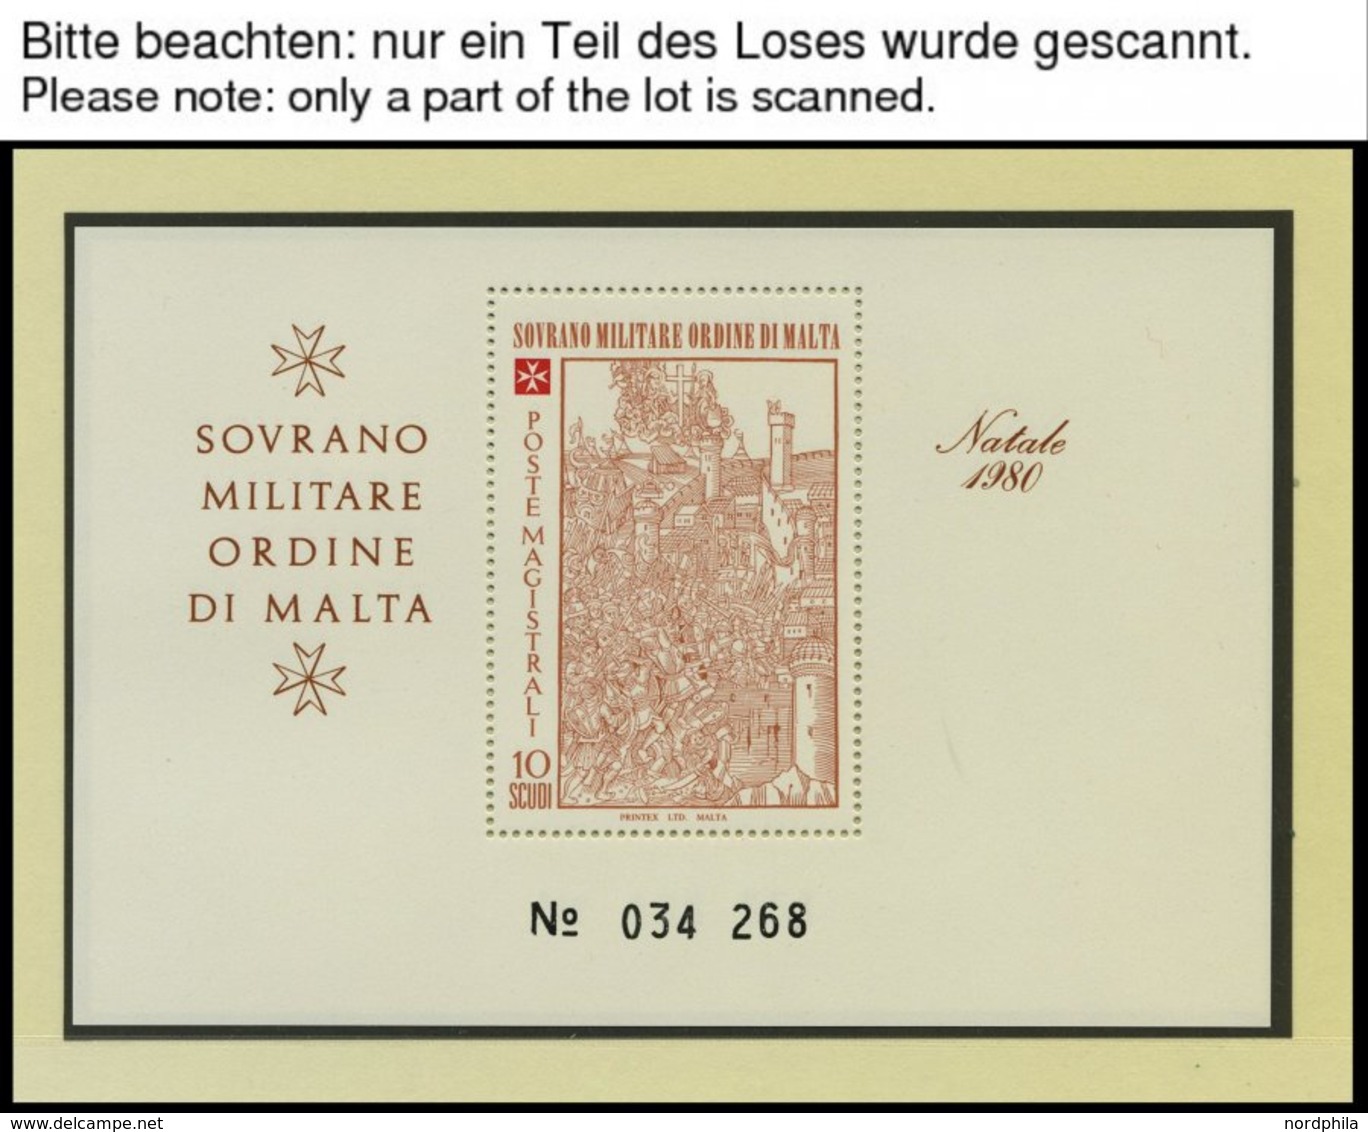 MALTA Bl. **, 1979-85, 7 Verschiedene Blocks Malta Exil-Regierung, Pracht - Used Stamps